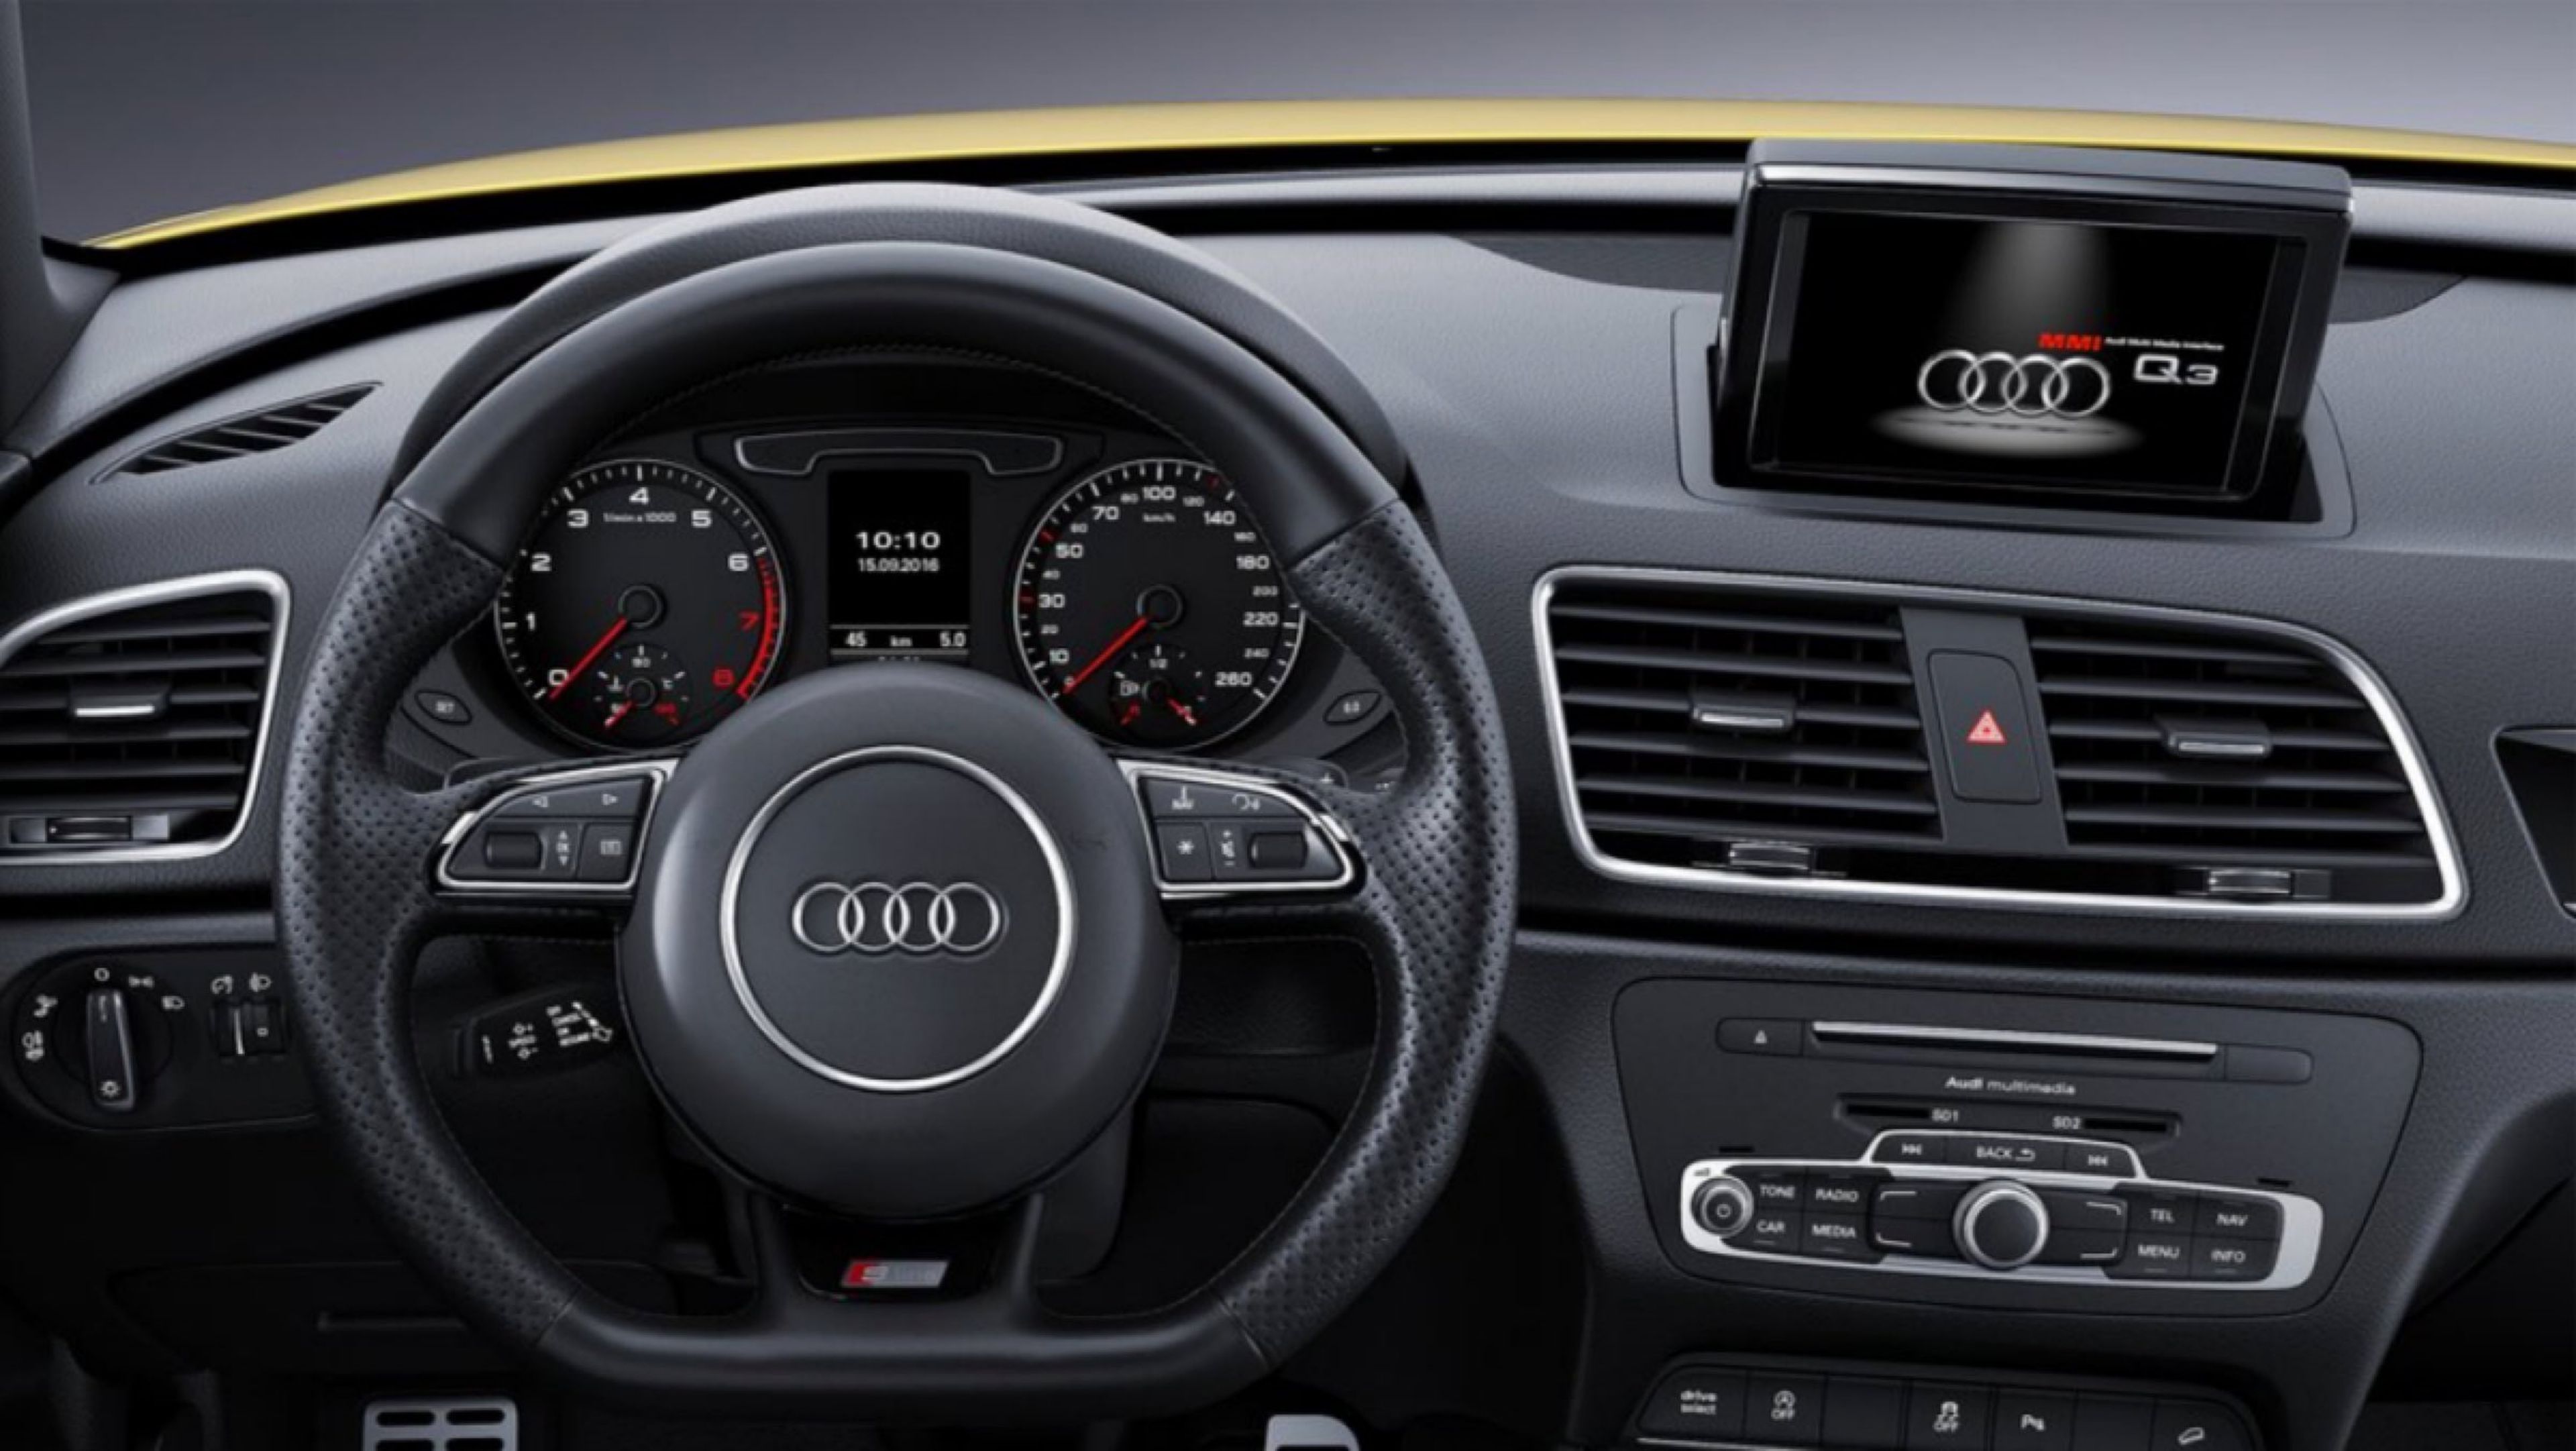 Audi Q3 2017 interior